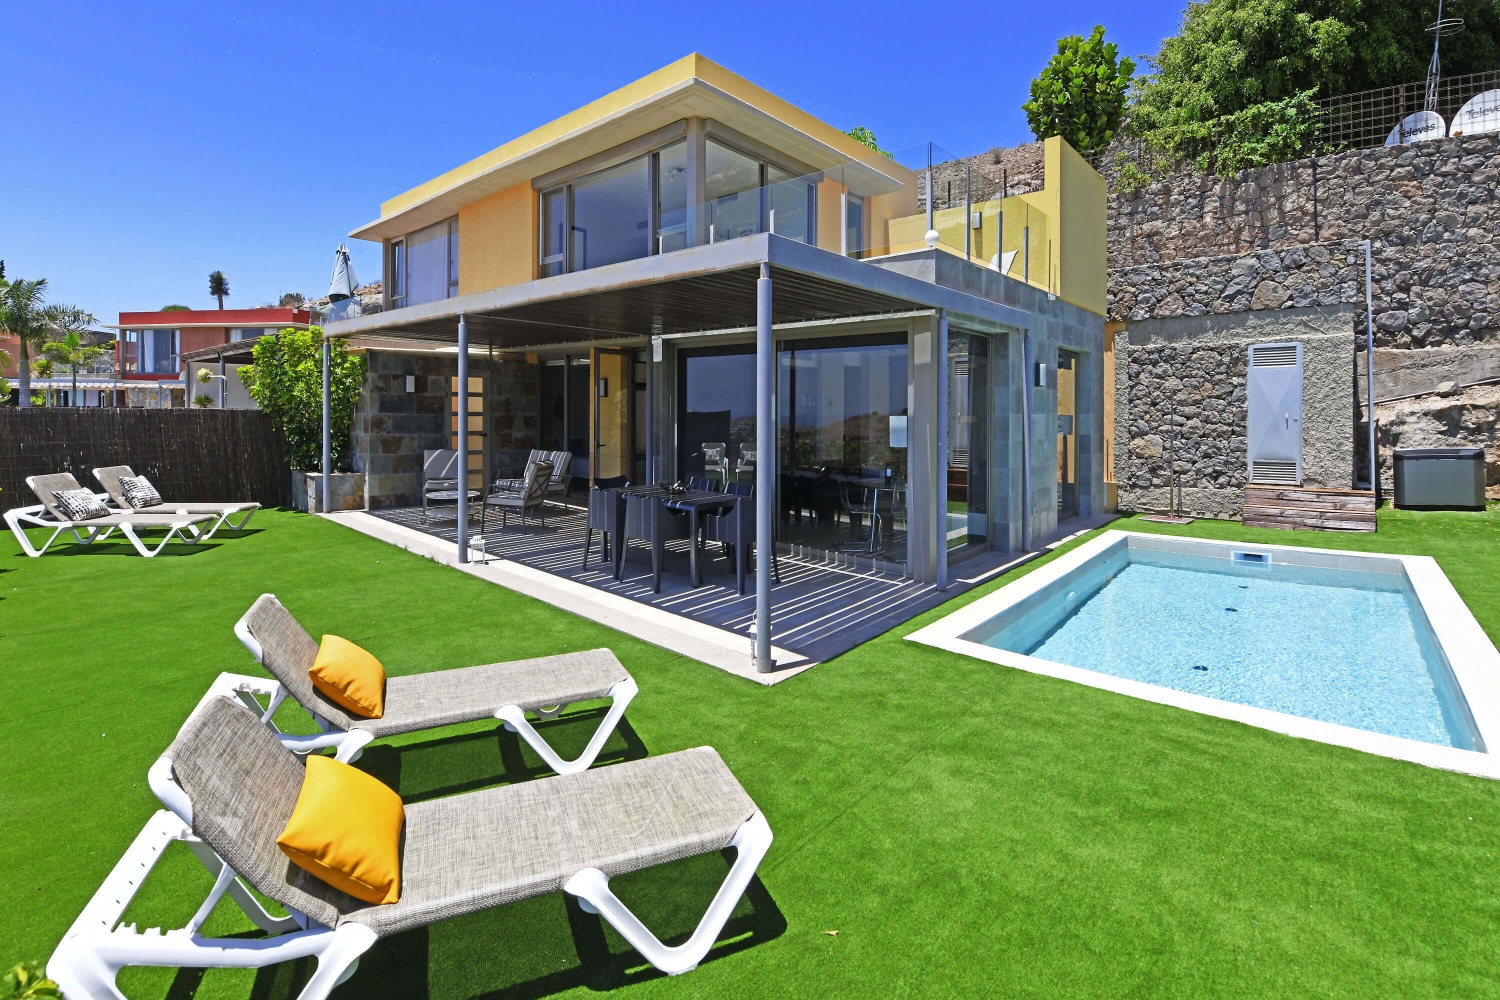 Maison de deux étages avec un design moderne, de grandes baies vitrées et un agréable espace extérieur avec une piscine privée